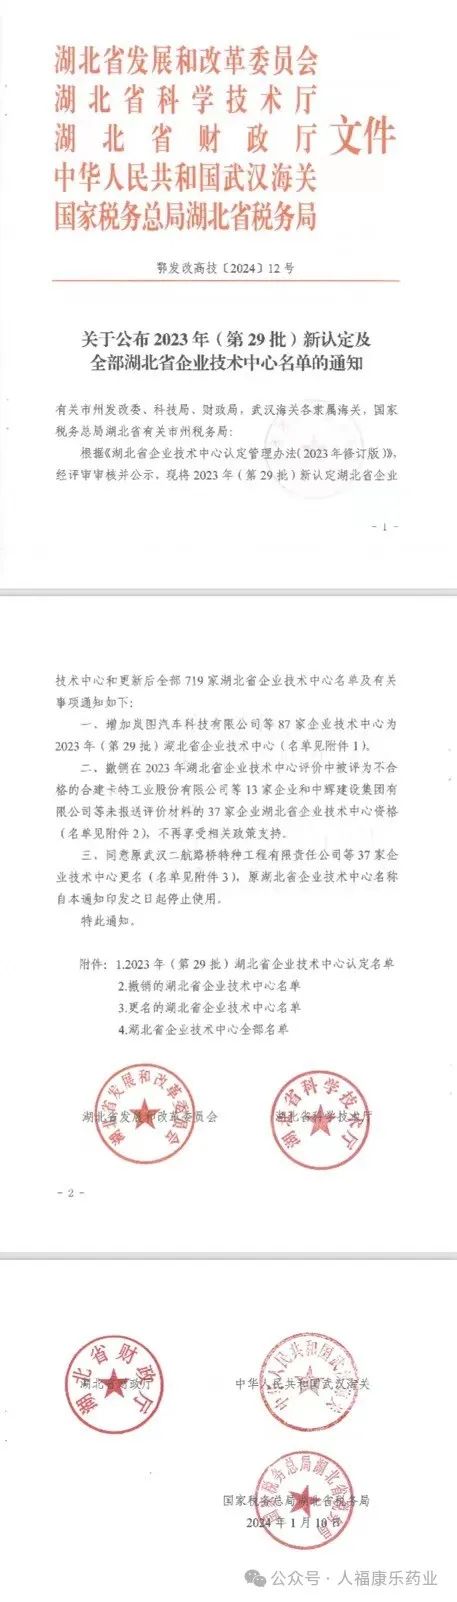 喜报|武汉康乐药业股份有限公司成功获批湖北省企业技术中心!